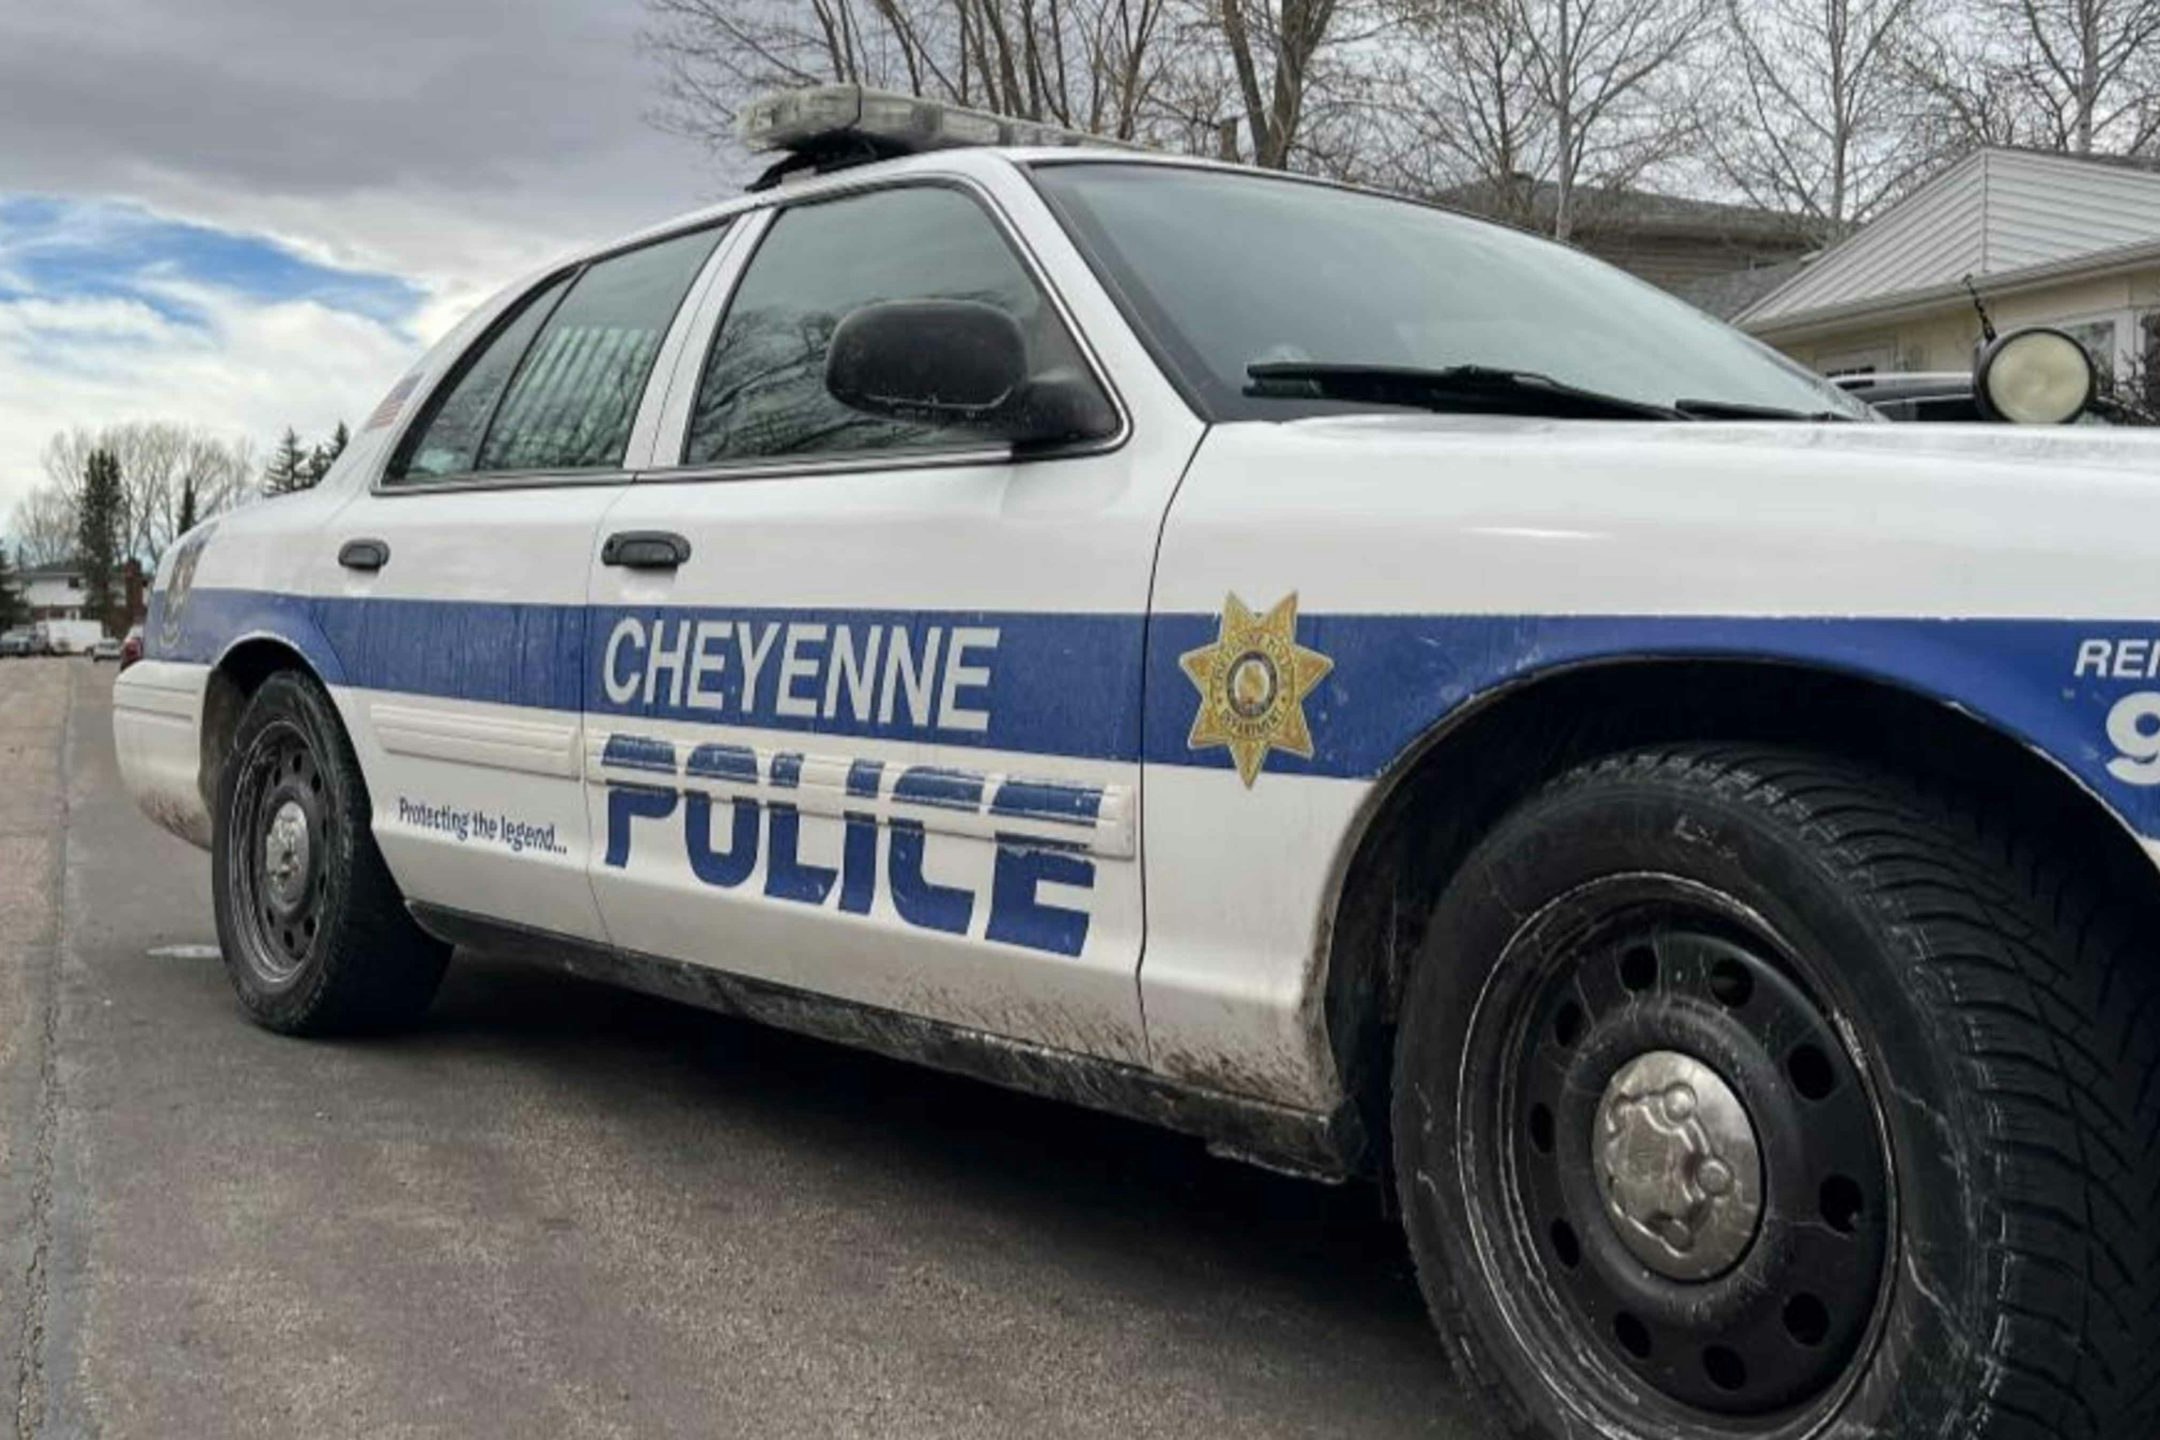 Cheyenne police car 3 22 22 scaled